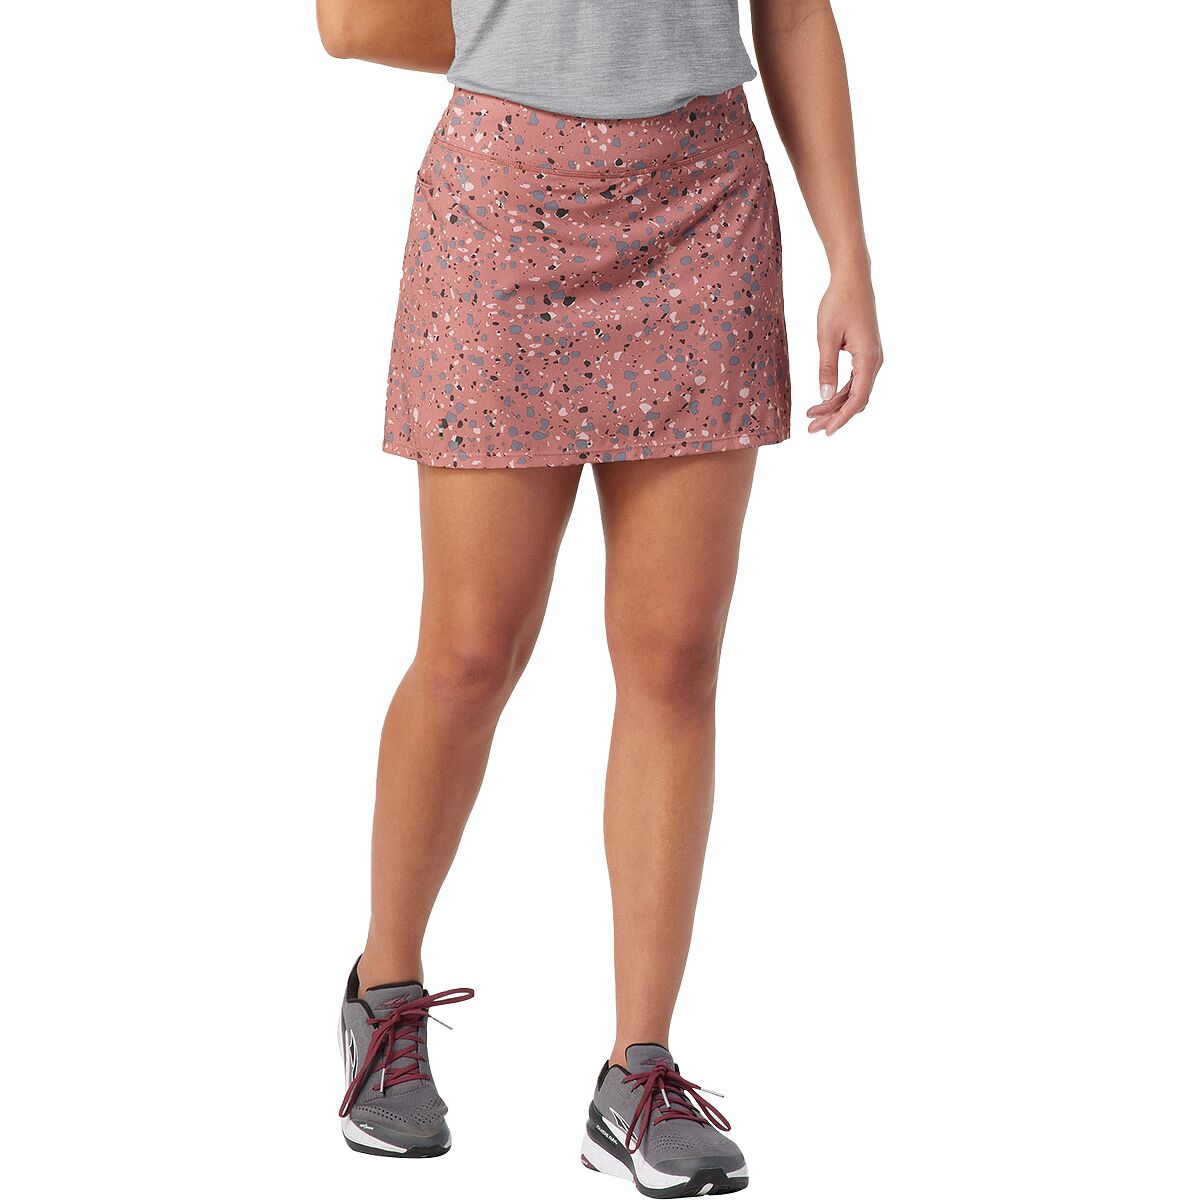 Merino Sport Lined Skirt - Women